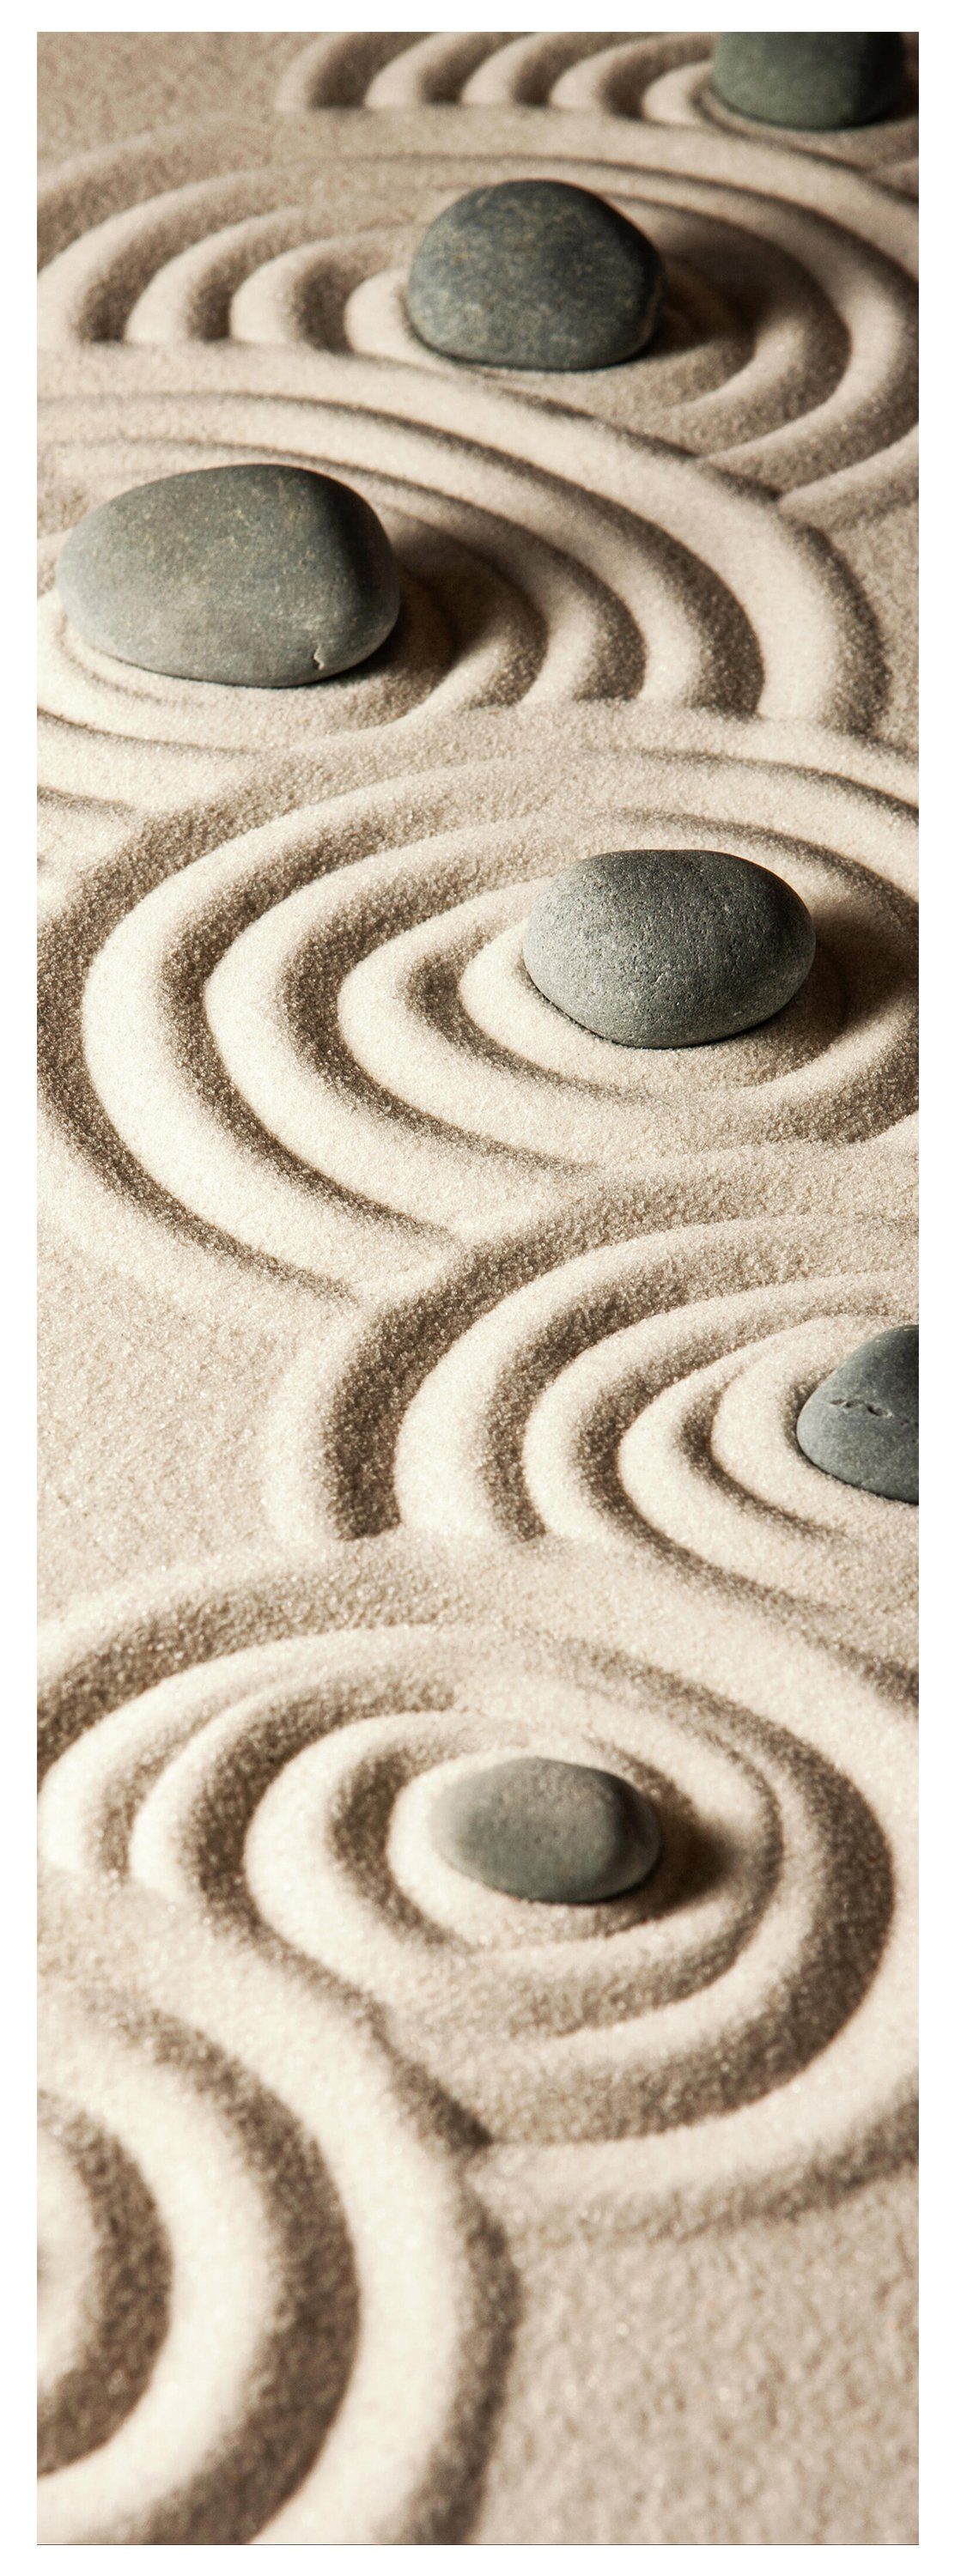 wandmotiv24 Türtapete Steine im Sand, Muster, Ringe, Formen, glatt, Fototapete, Wandtapete, Motivtapete, matt, selbstklebende Dekorfolie